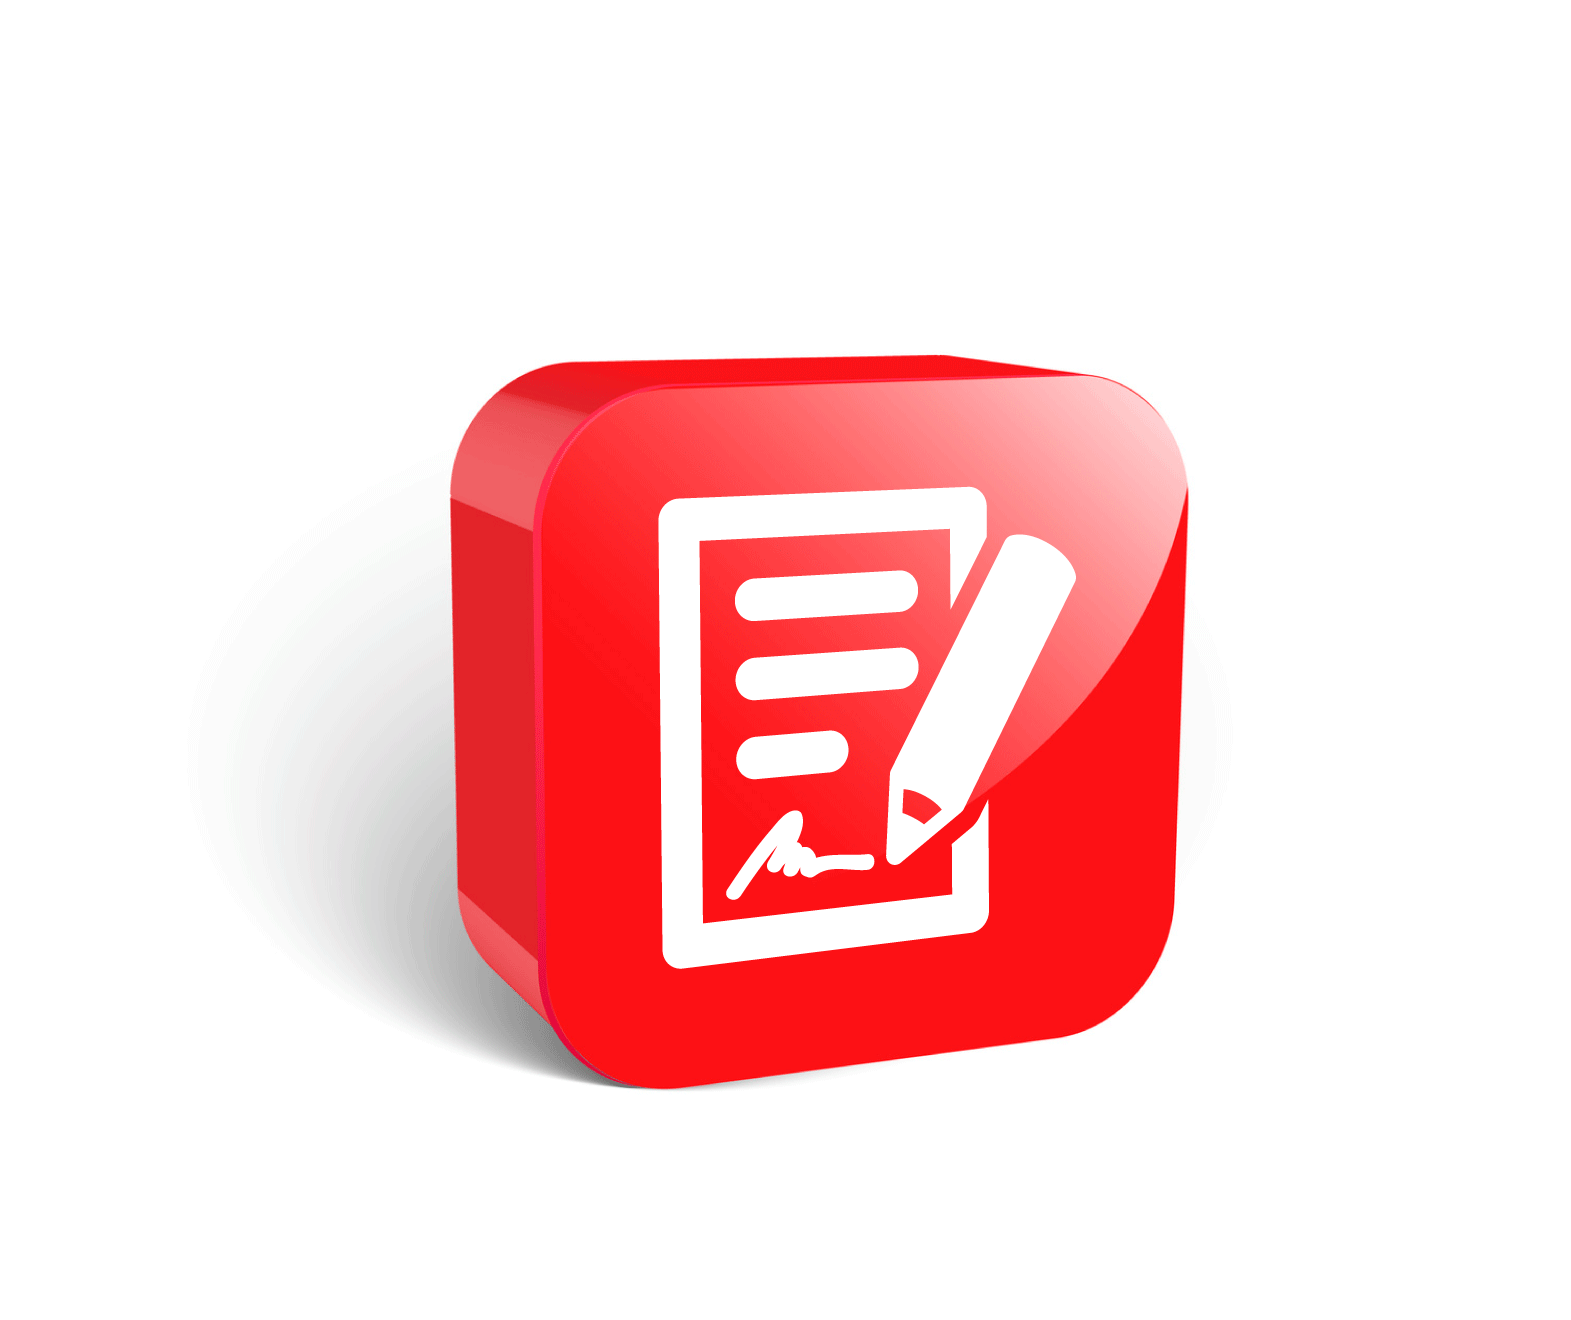 duża czerwona ikona 3D, umowa o pracę